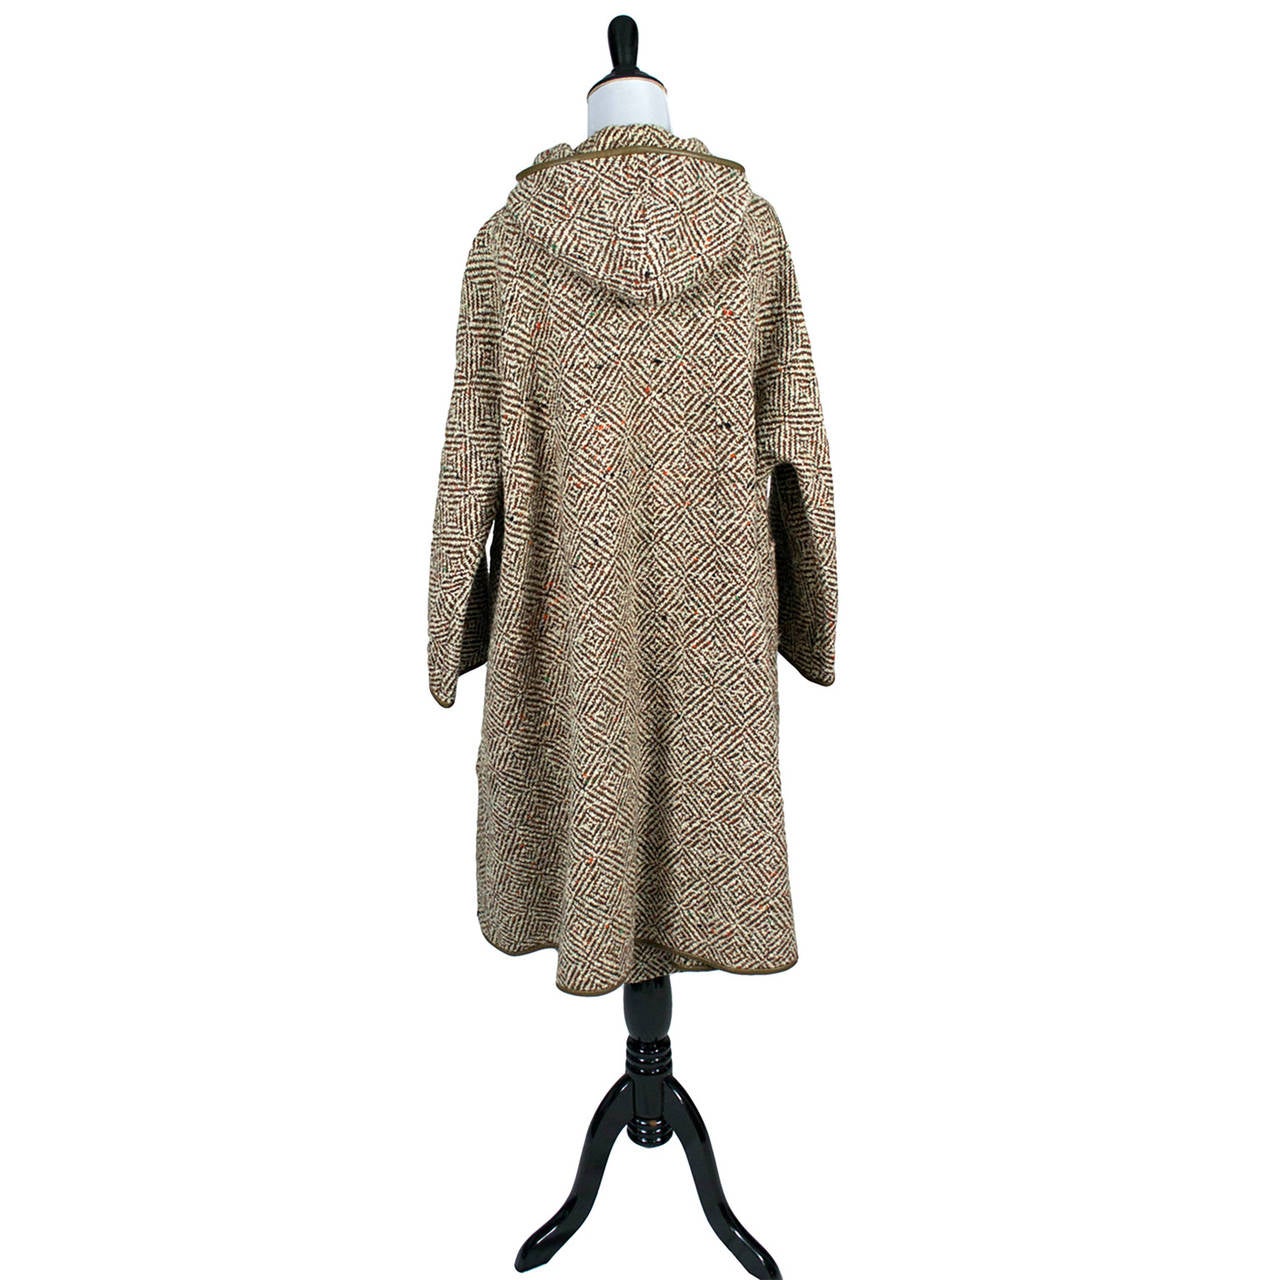 Bonnie Cashin Costume vintage des années 1960 - Manteau à capuche en tweed et jupe mince « Sills and Co » 1